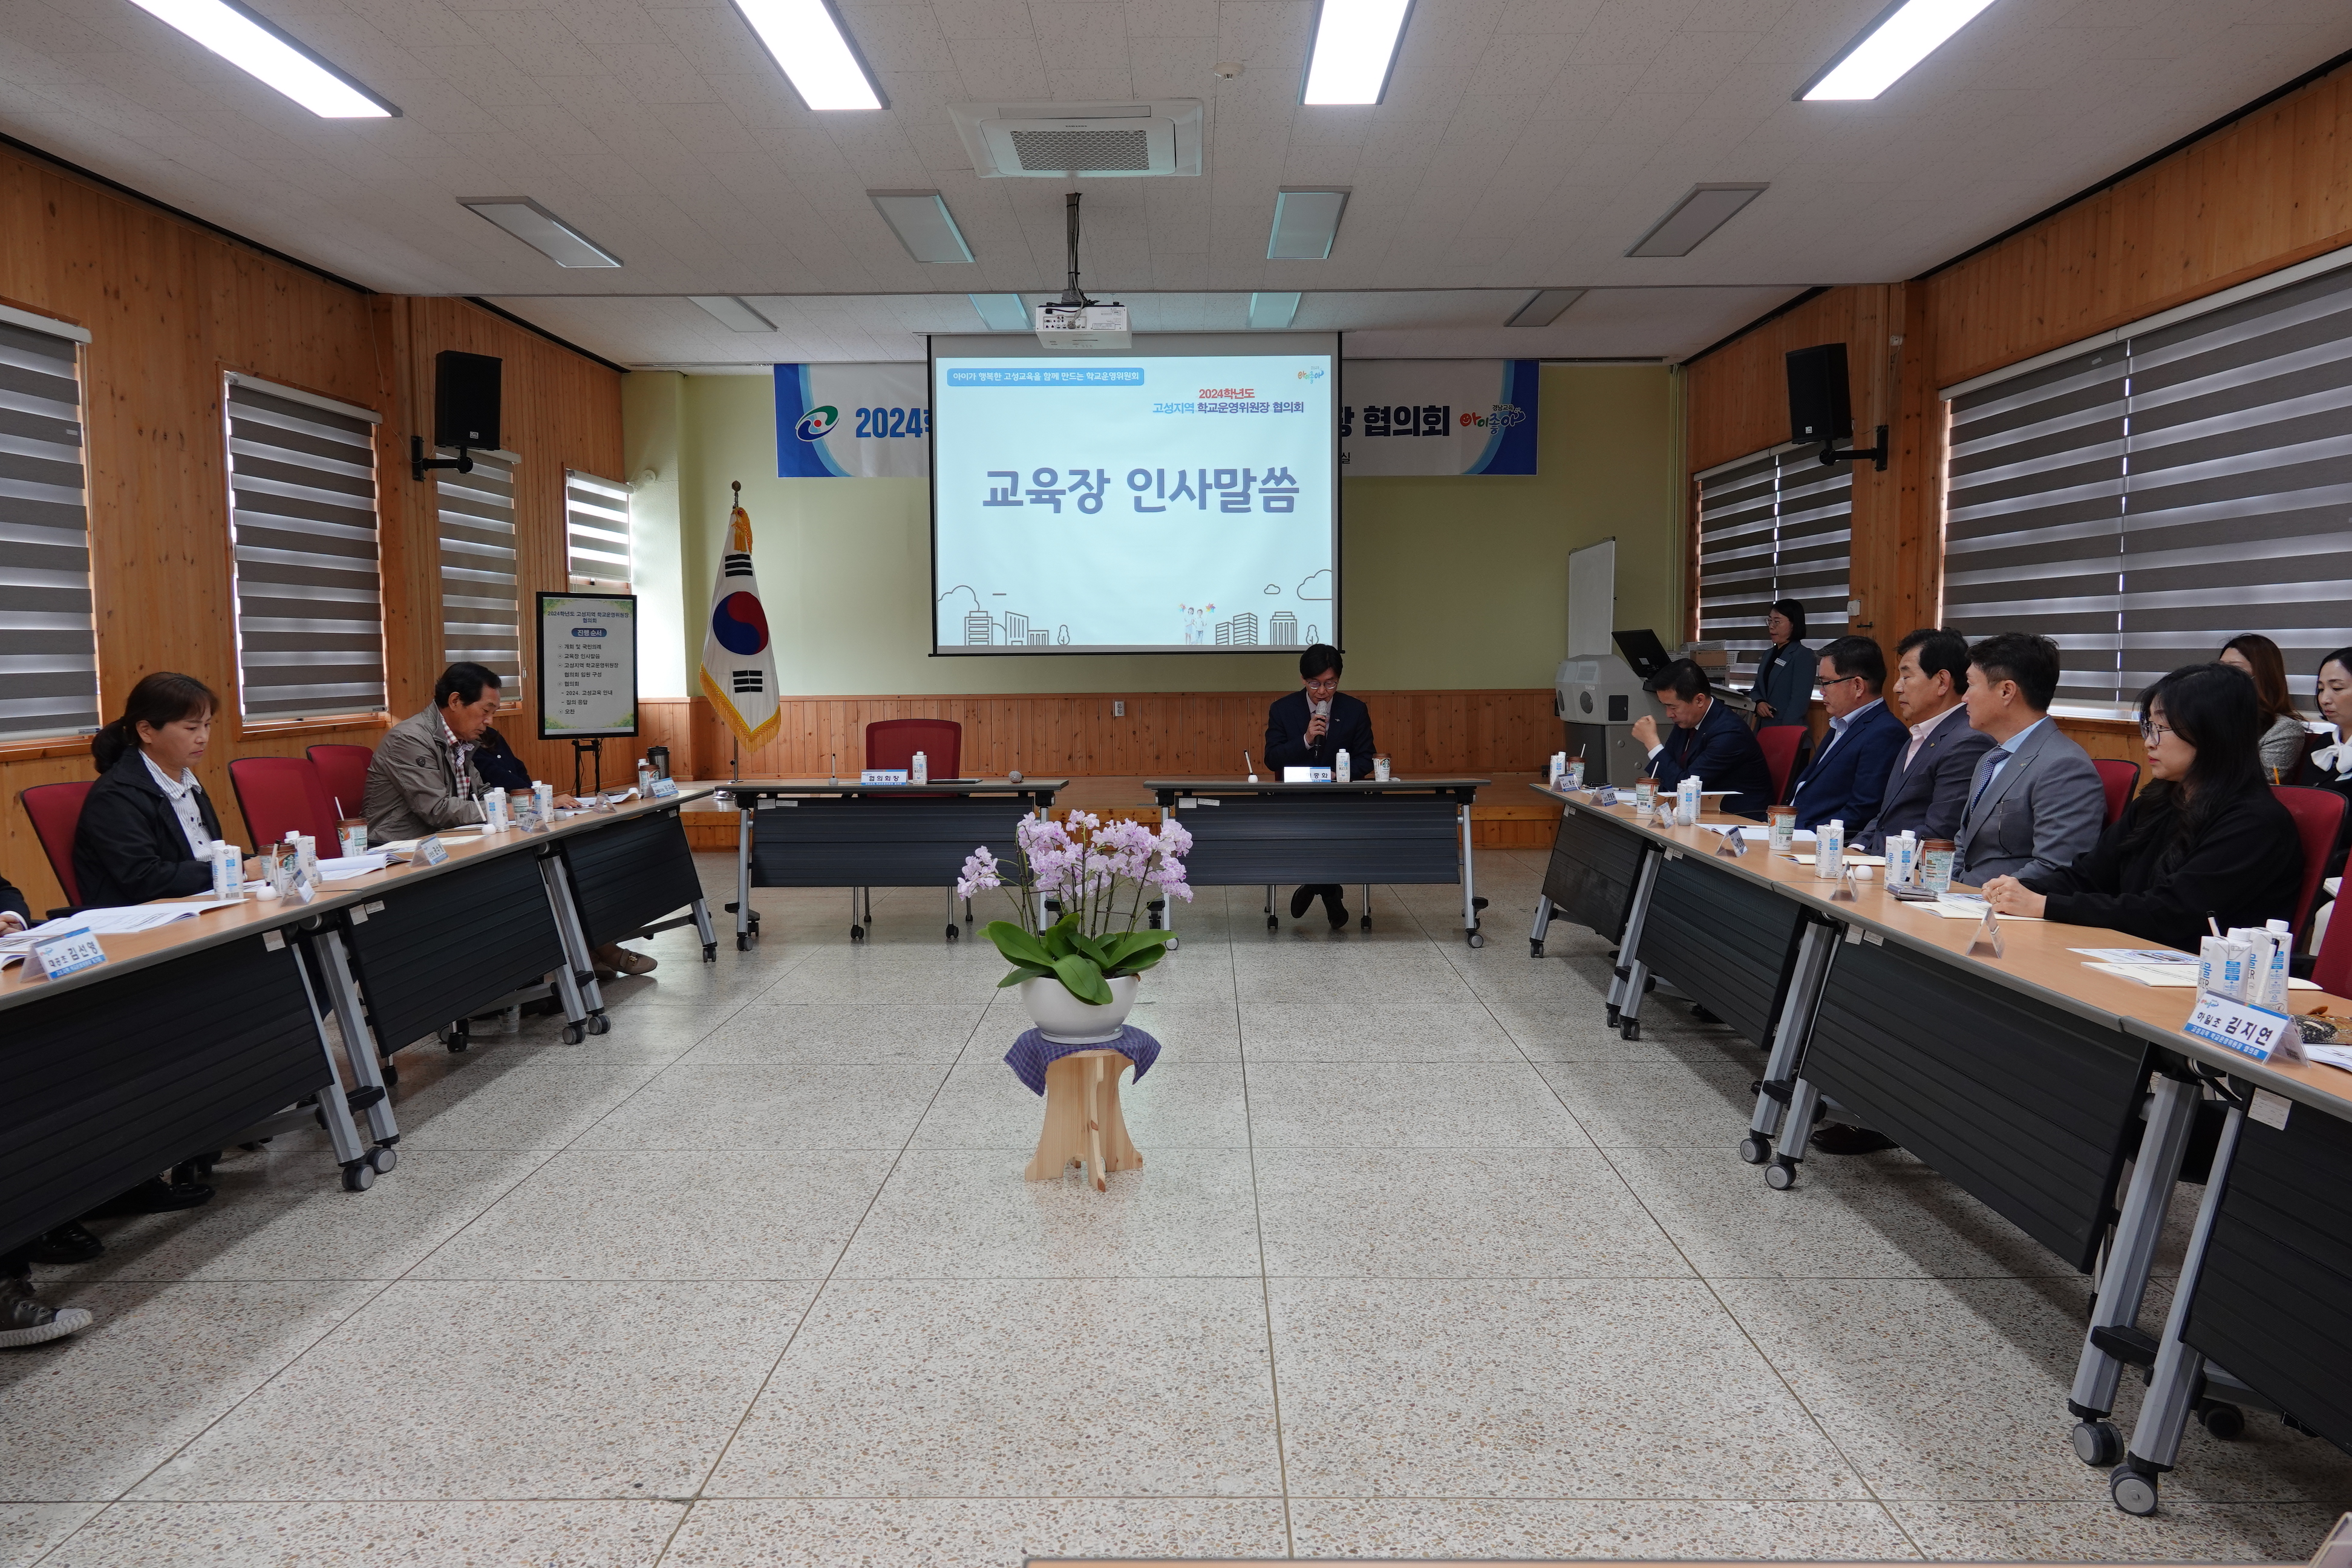 
															
															
																
																	고성교육지원청, 2024학년도 고성지역  학교운영위원장 협의회 개최 [1번째 이미지]
																
																
															
														